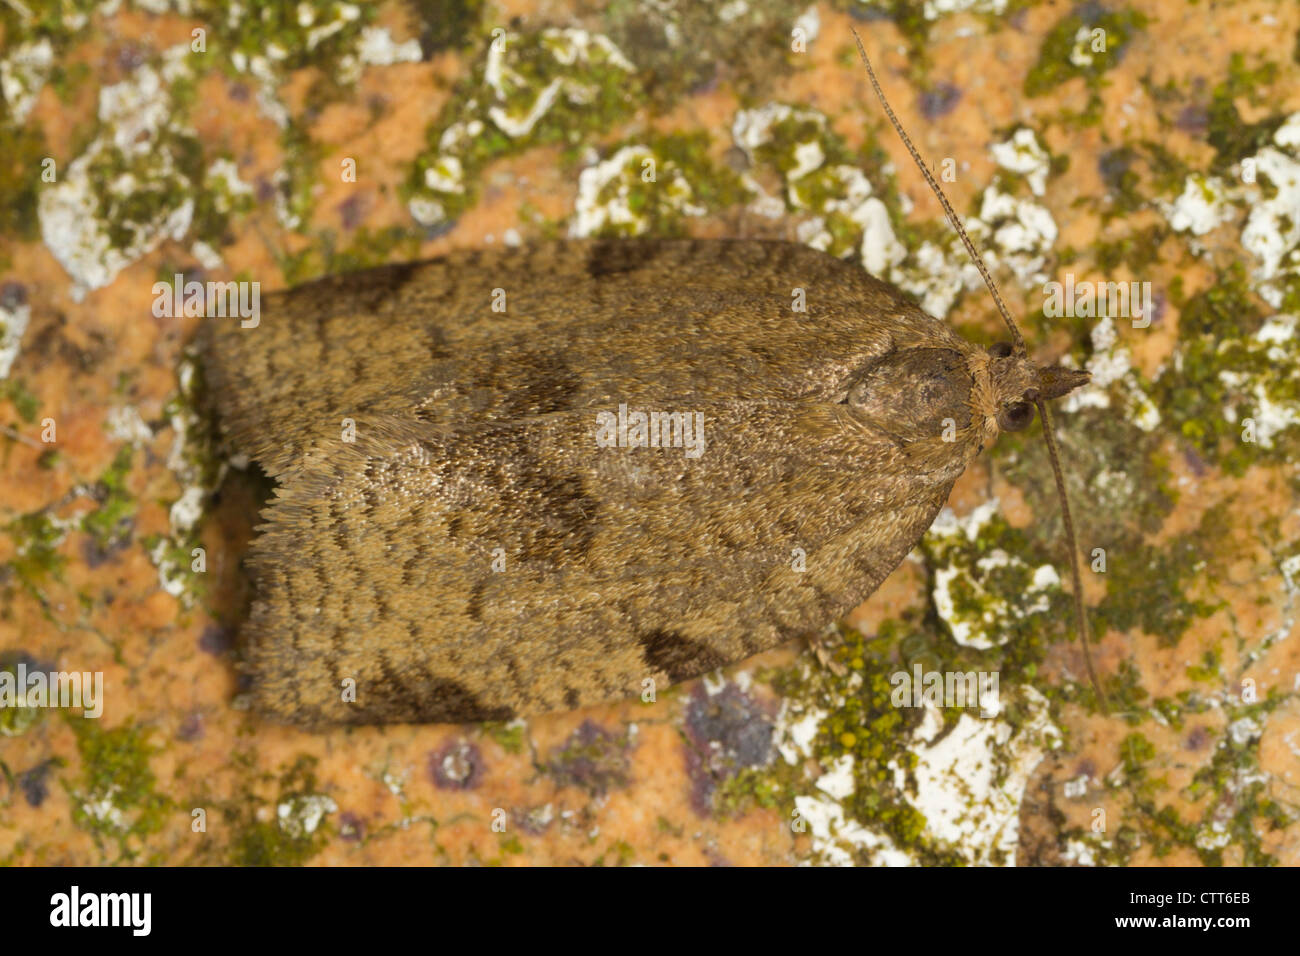 Lozotaenia forsterana resting on a lichen-covered stone Stock Photo